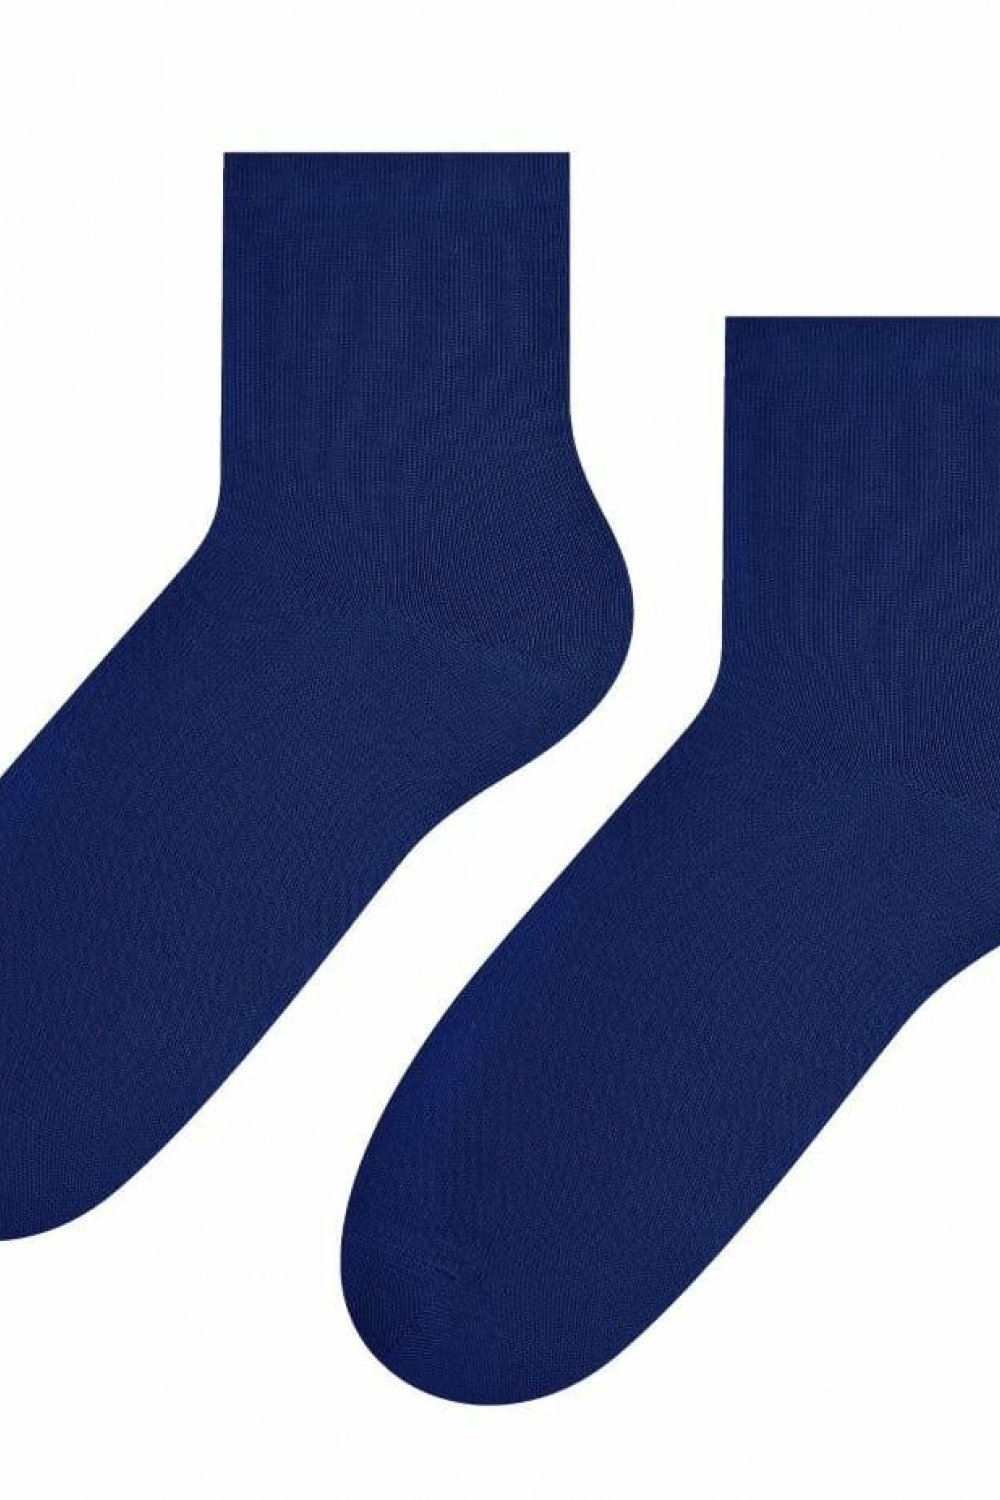 Dámske ponožky 037 dark blue